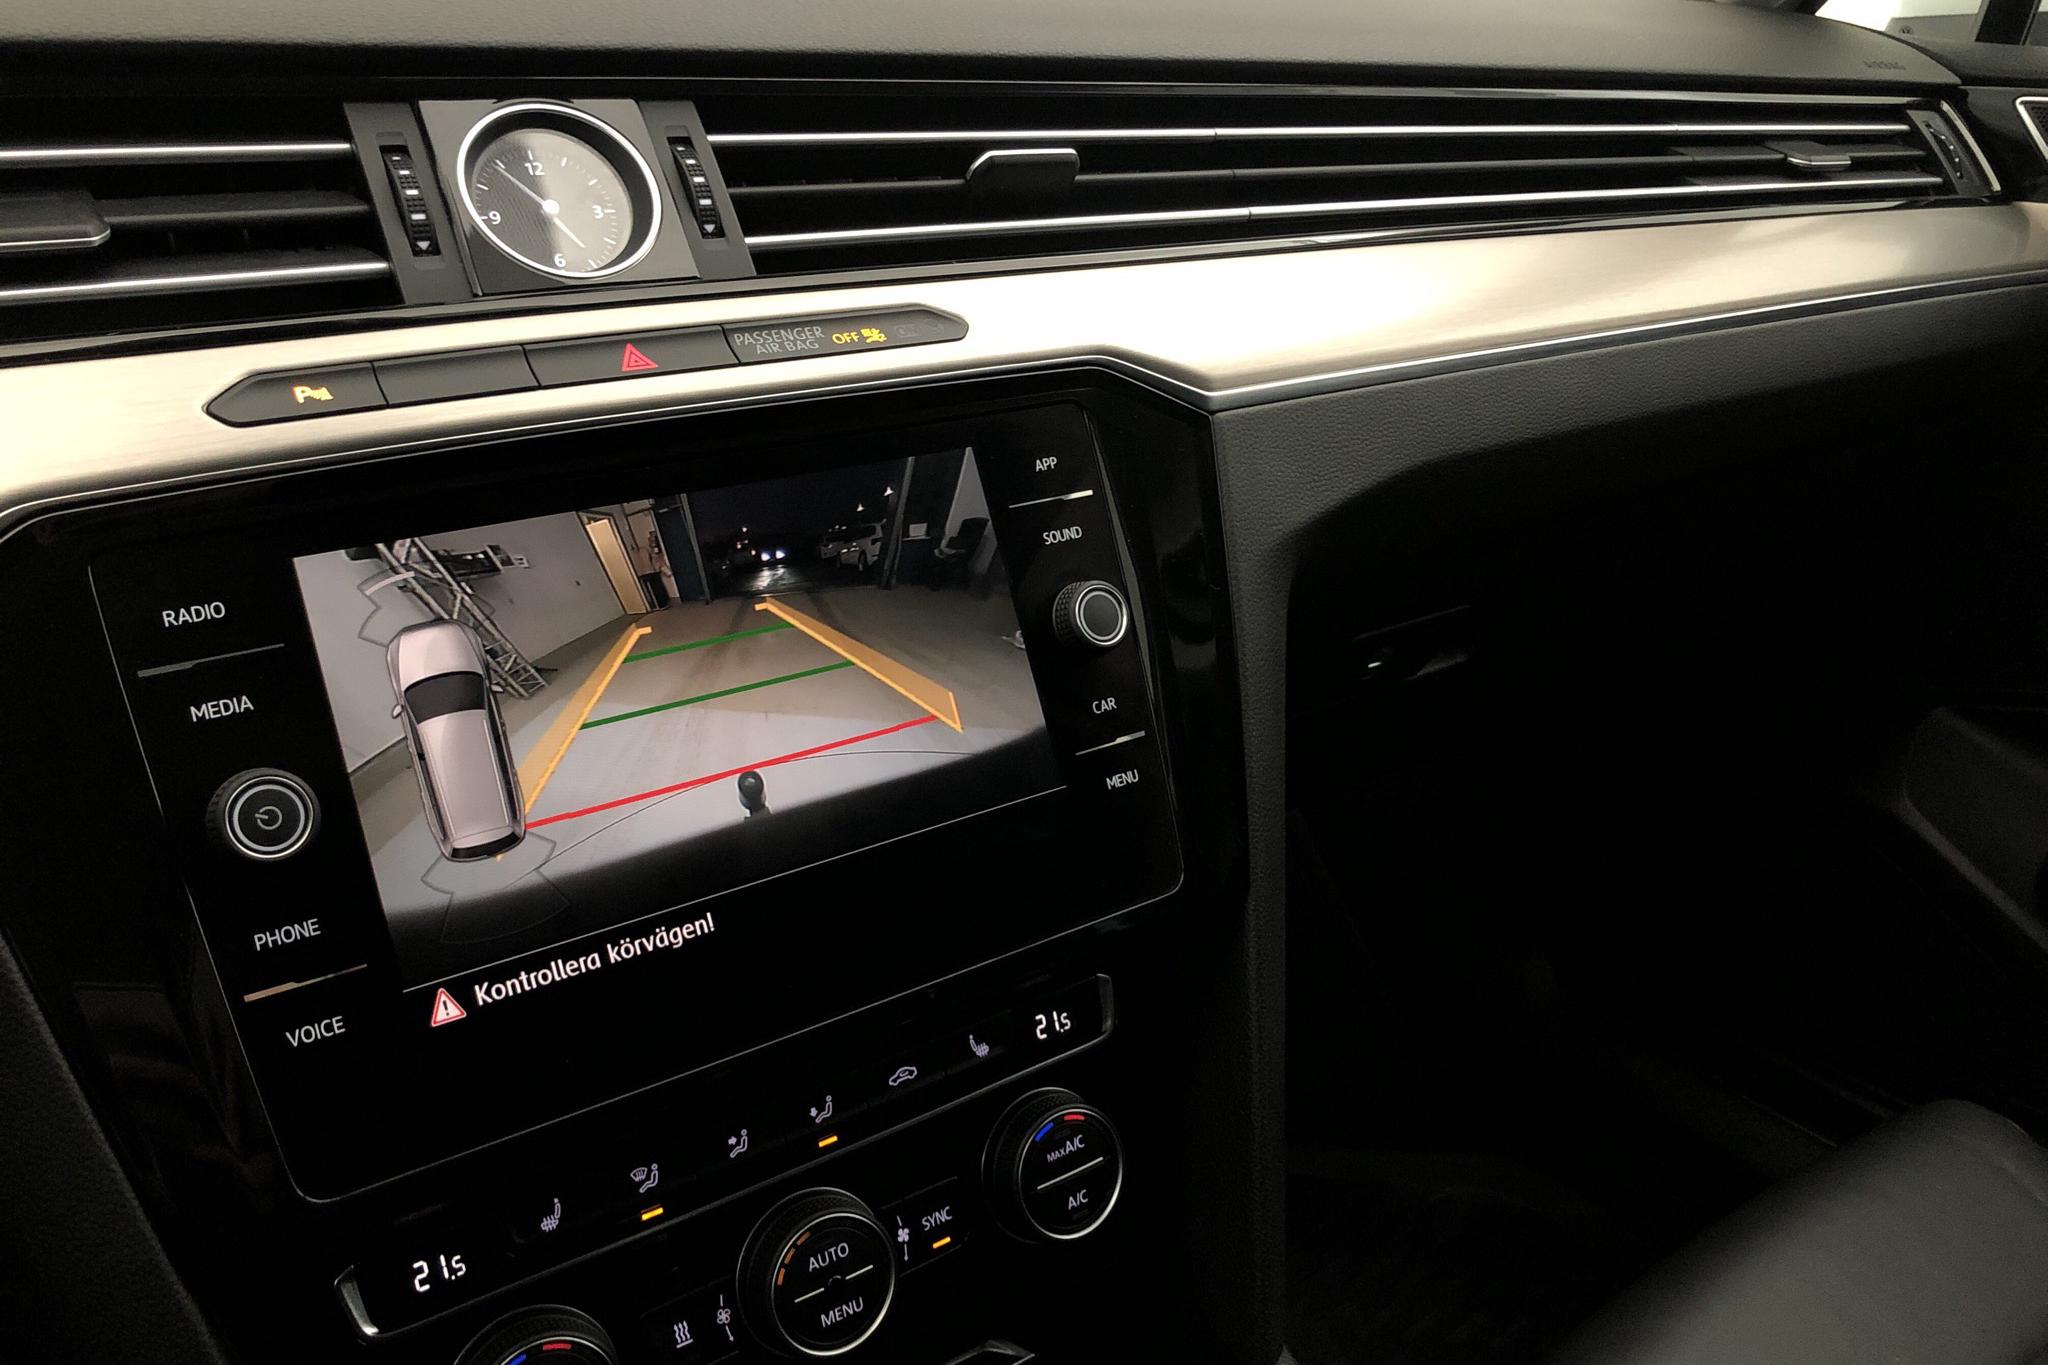 VW Passat 2.0 TDI Sportscombi 4MOTION (190hk) - 7 193 mil - Automat - vit - 2018